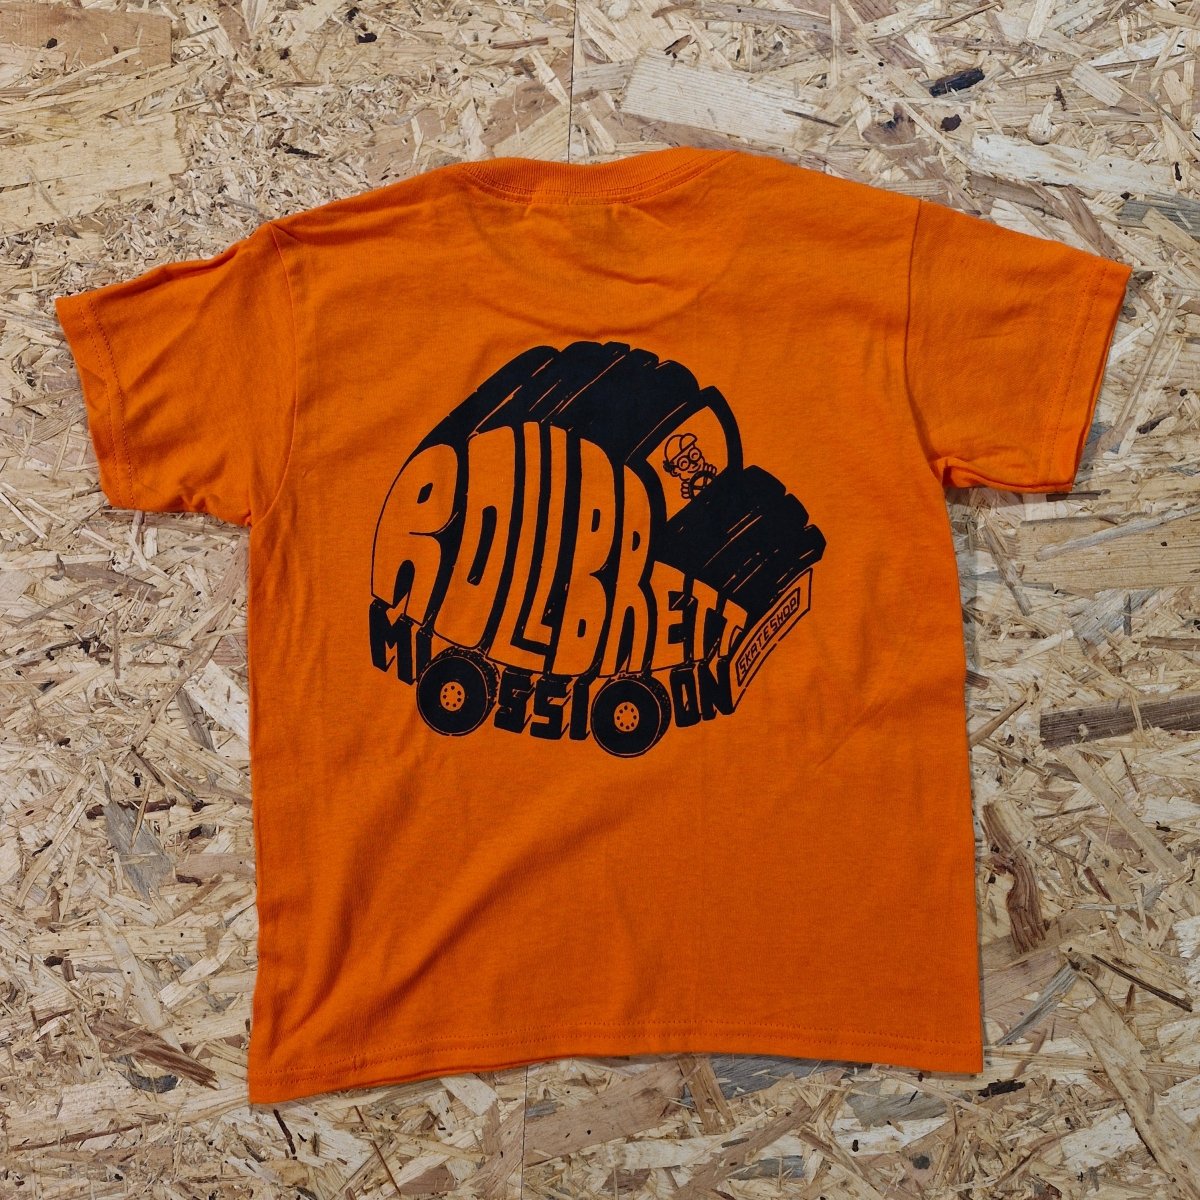 Rollbrett Mission Kids T-Shirt Gabbo orange - Shirts & Tops - Rollbrett Mission